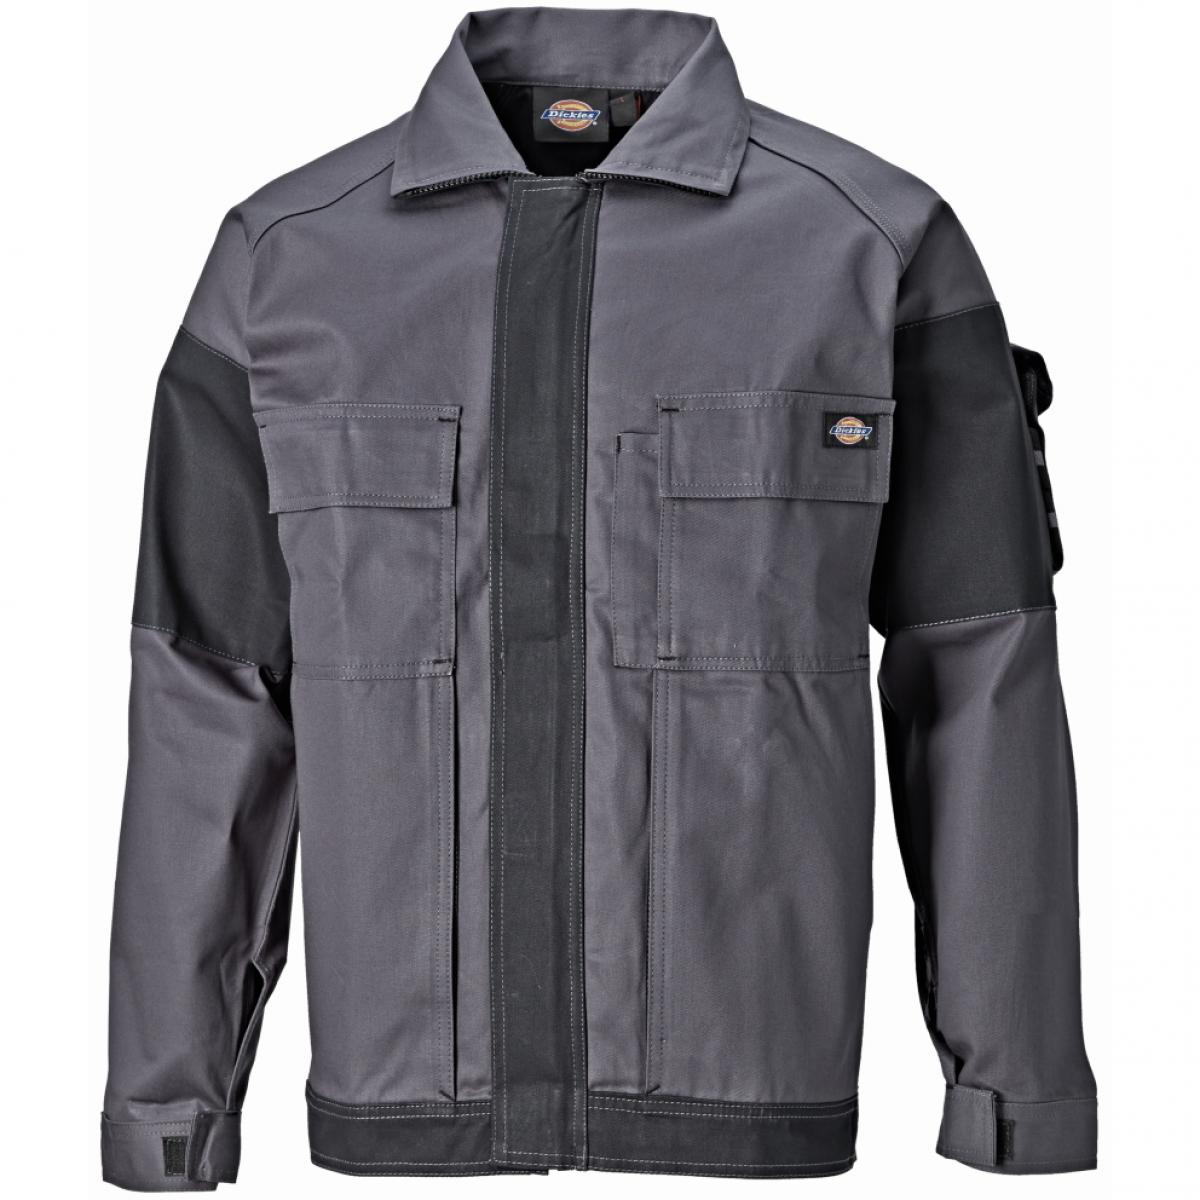 Hersteller: Dickies Herstellernummer: WD4910 Artikelbezeichnung: GDT 290 Jacke - Arbeitsjacke Farbe: Grau/Schwarz